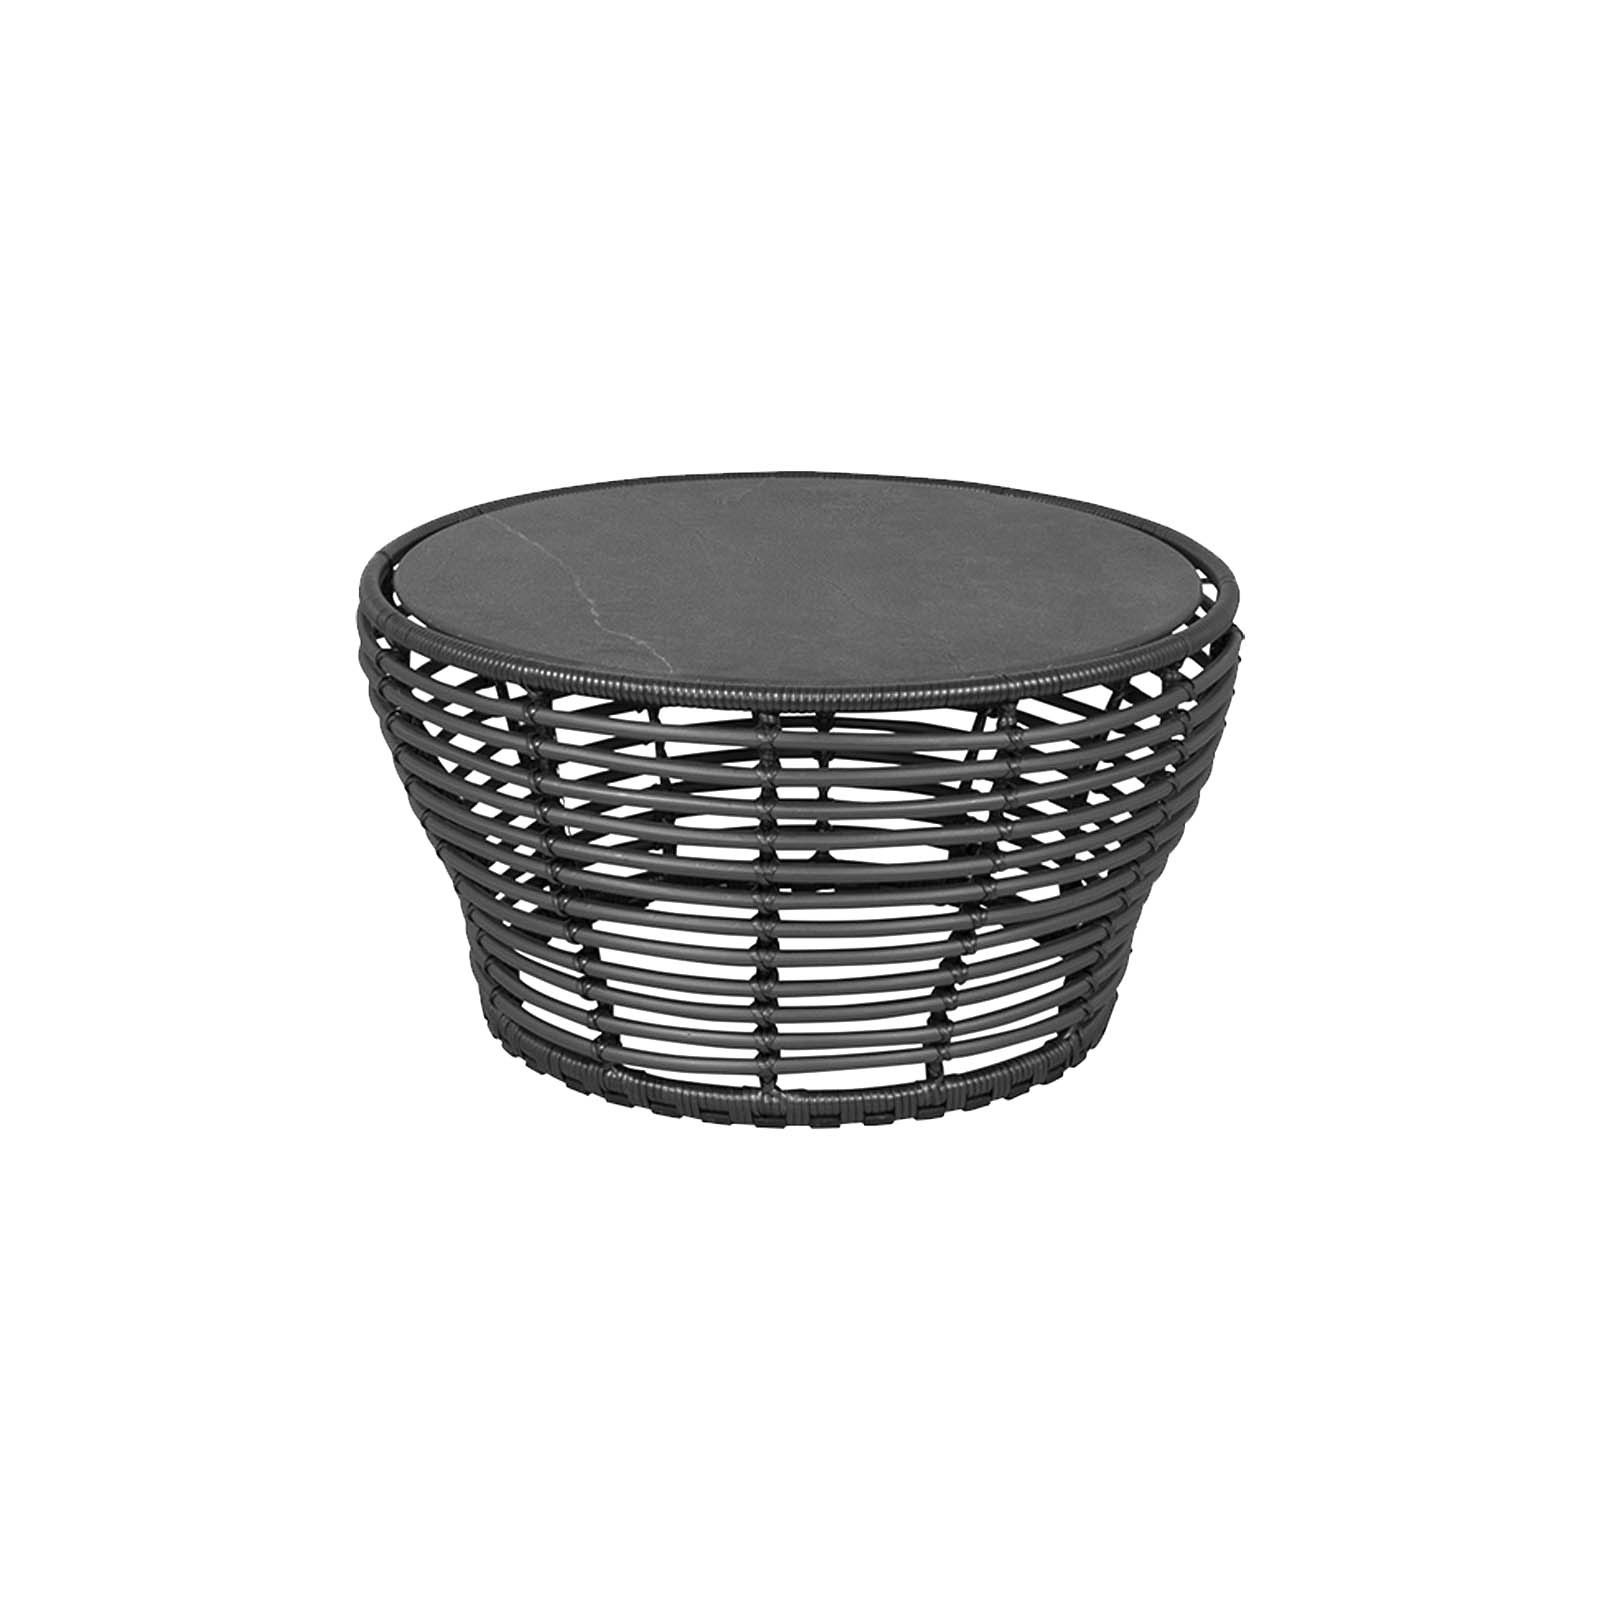 Couchtisch medium Basket aus CL Weave in Graphite mit Tischplatte aus Ceramic in Fossil Black